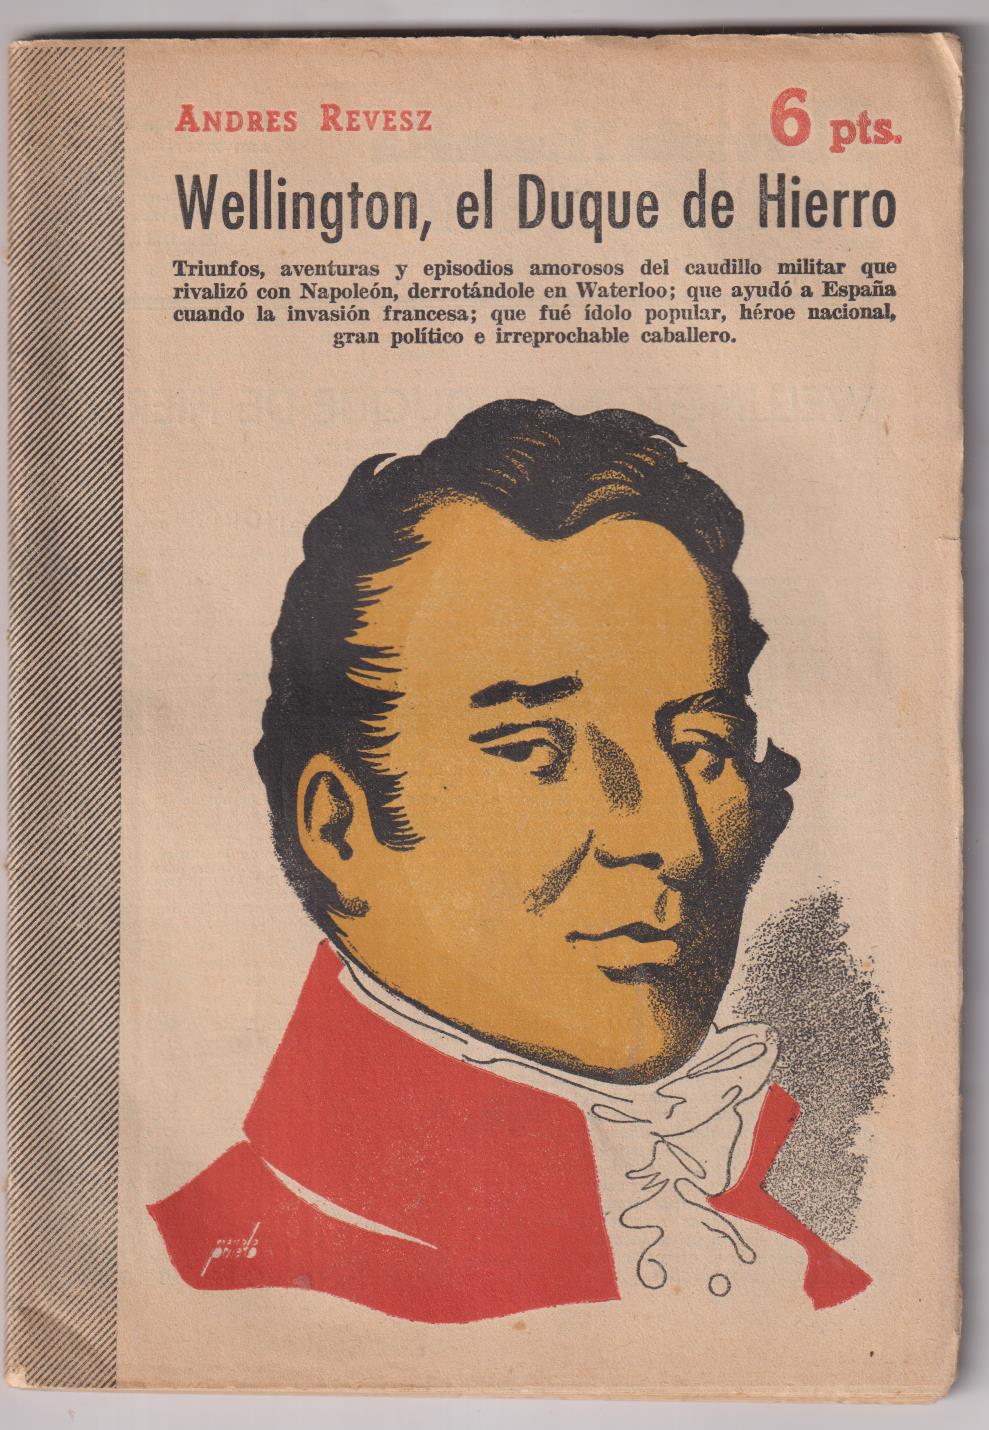 Revista Literaria Novelas y Cuentos nº 1239. Andrés Revesz. Wellington, El Duque de Hierro